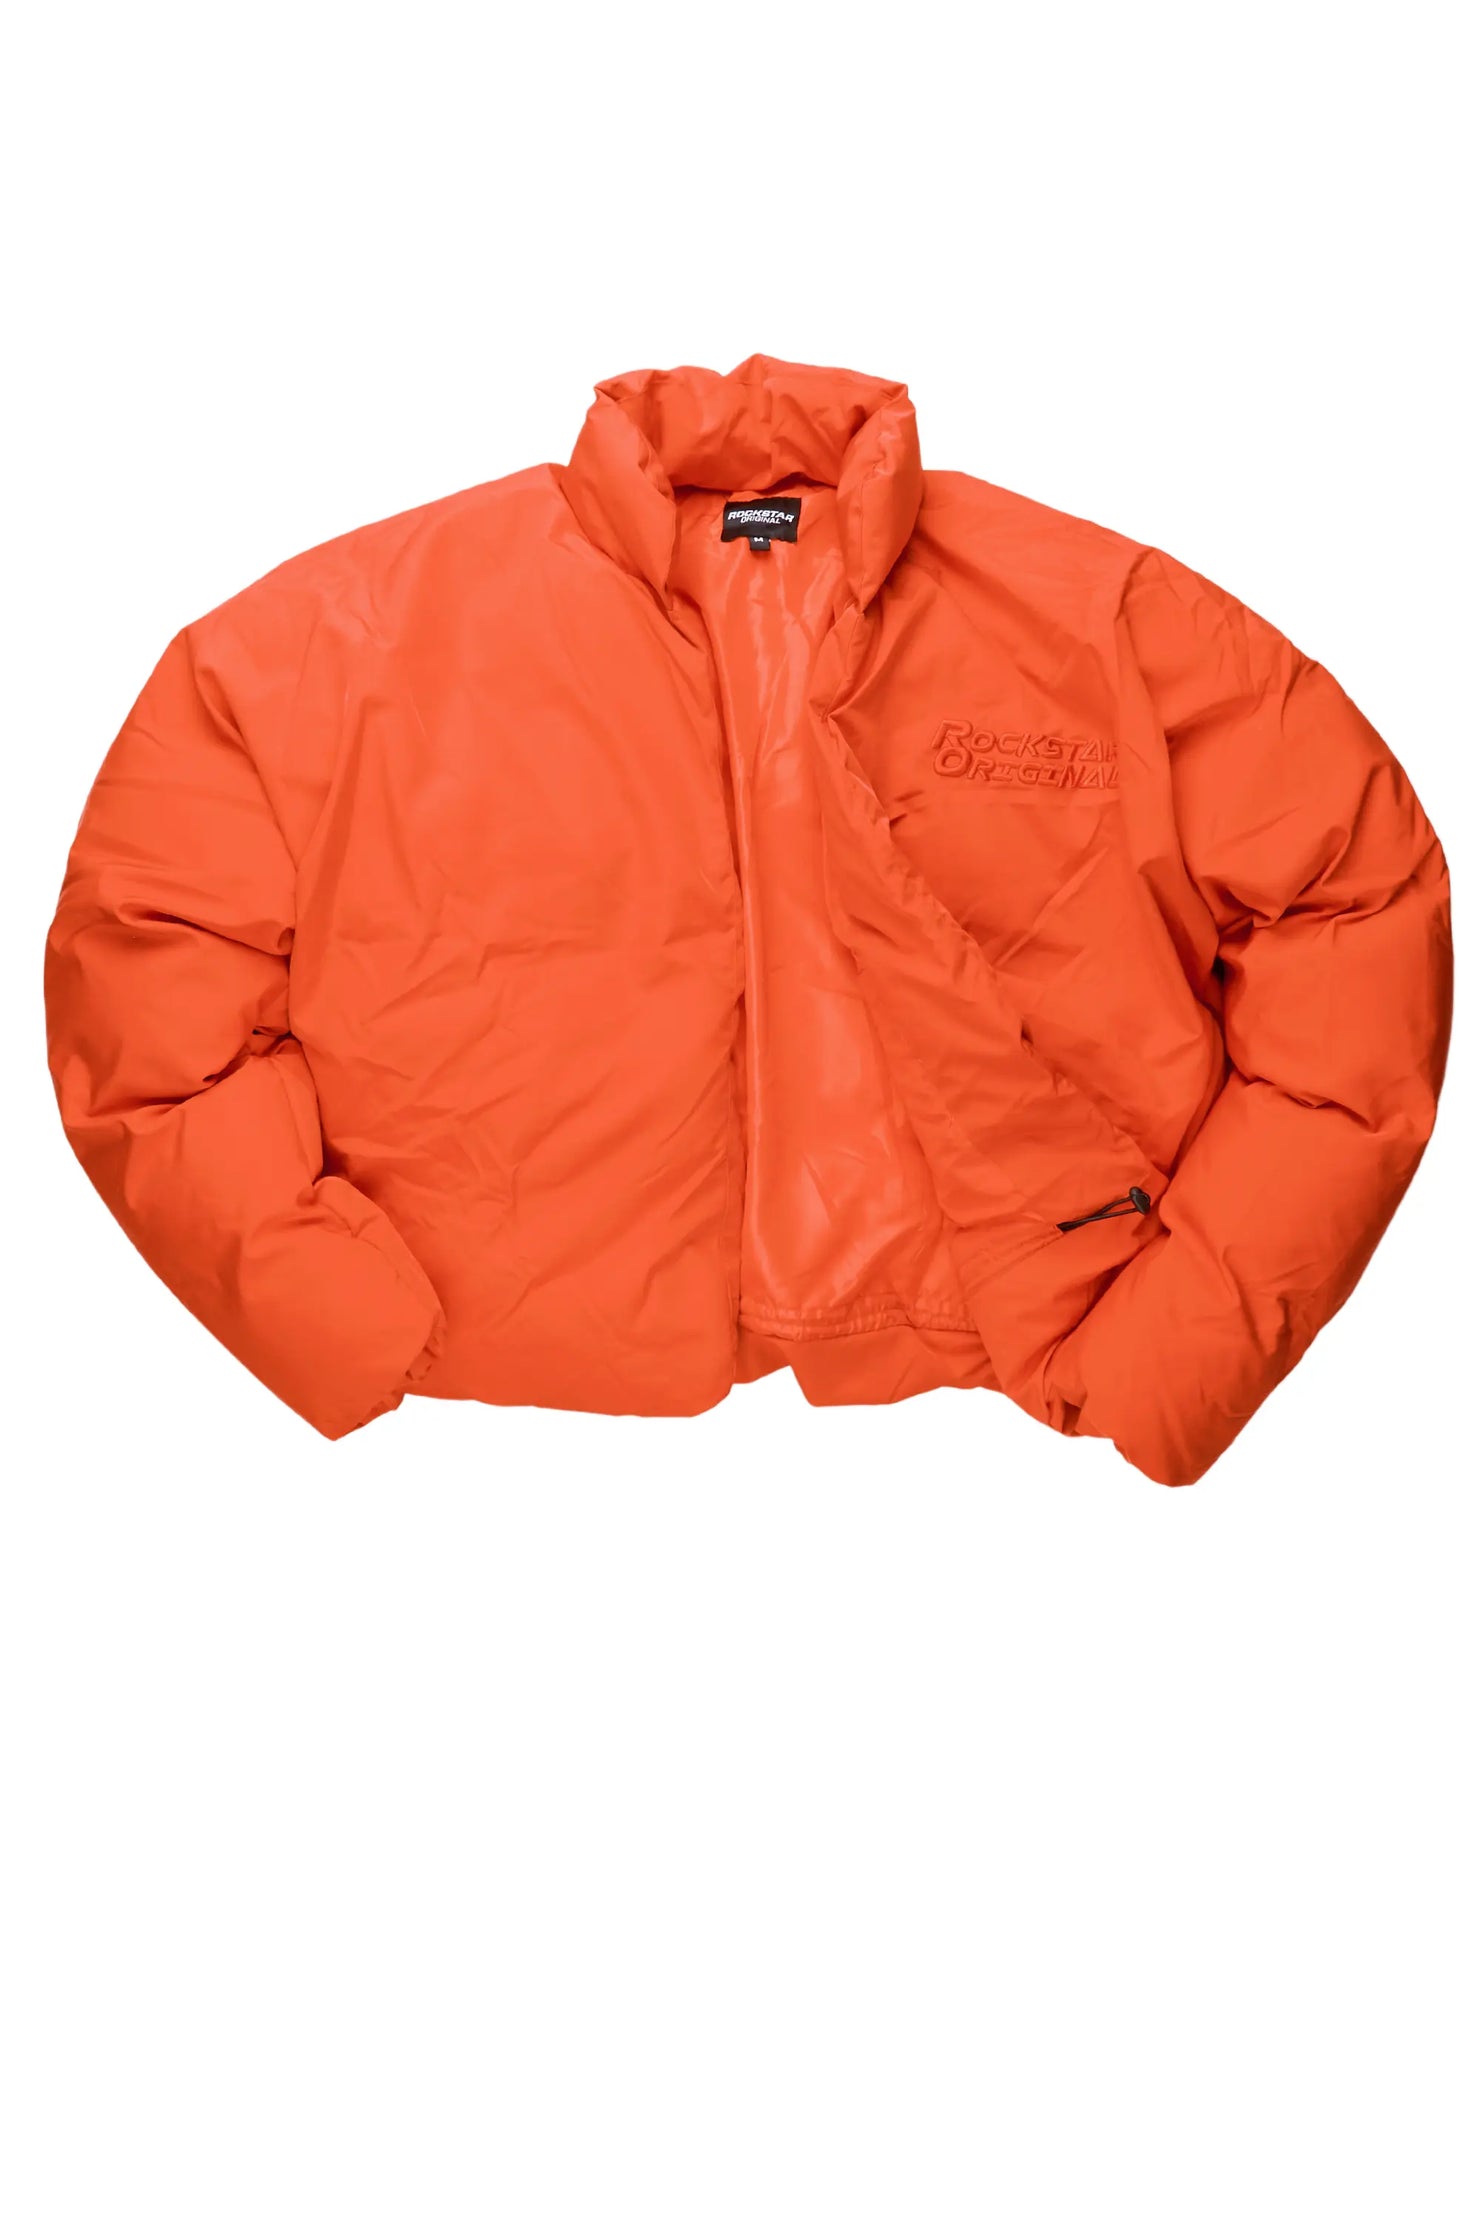 Damien Orange Puffer Jacket– Rockstar Original